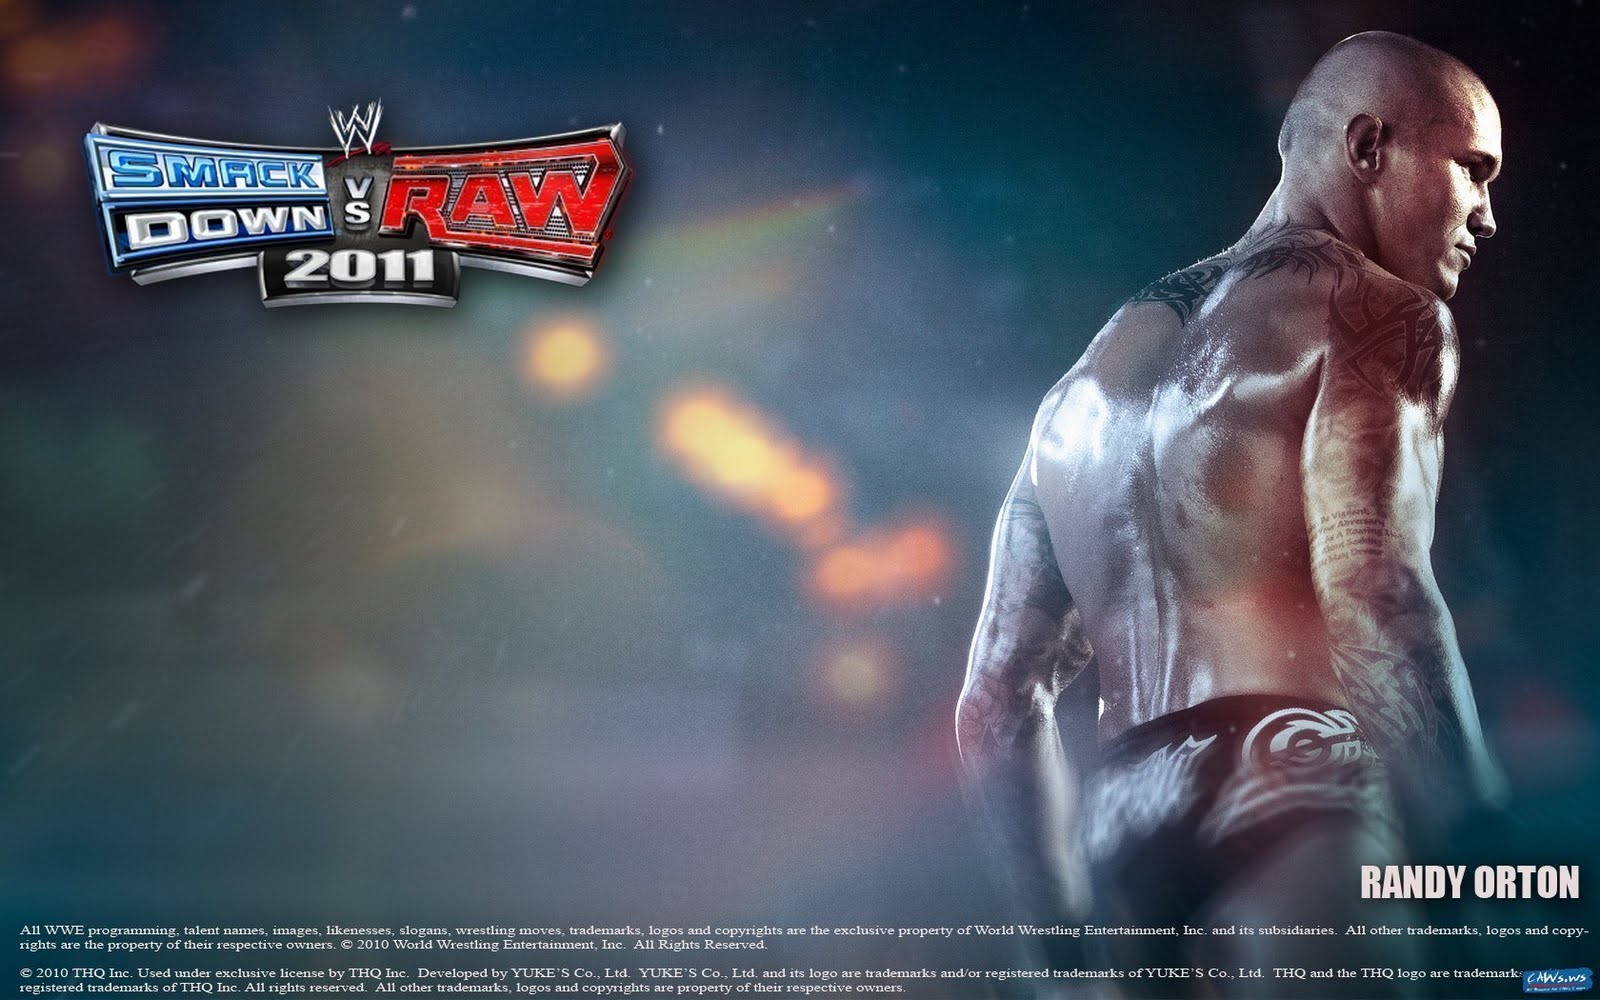 Wwe Smackdown Vs Raw 11 Randy Orton 2 Wallpaper